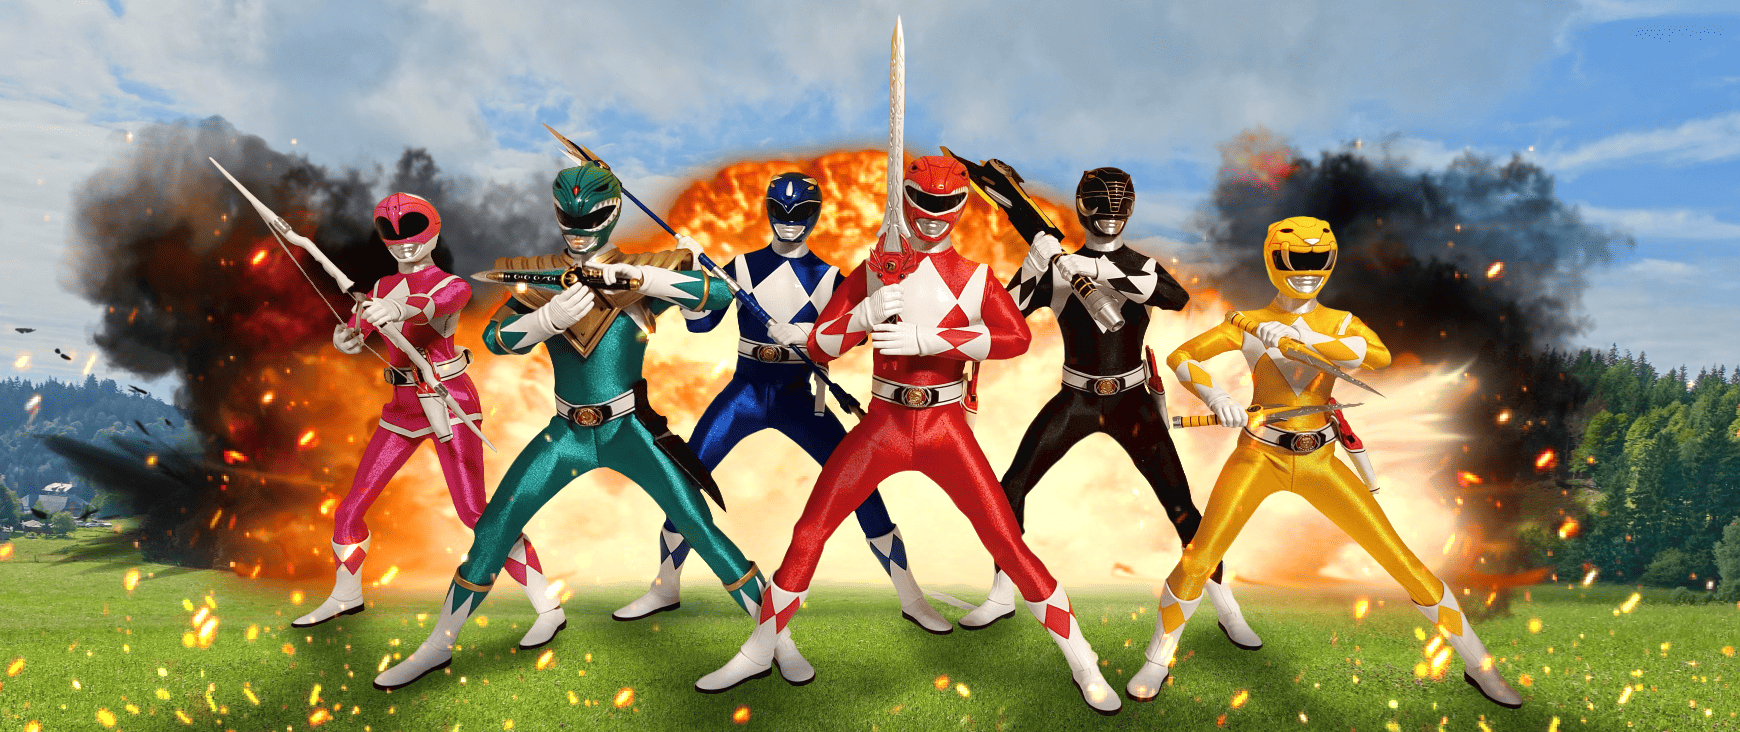 ThreeZero Power Rangers action figures